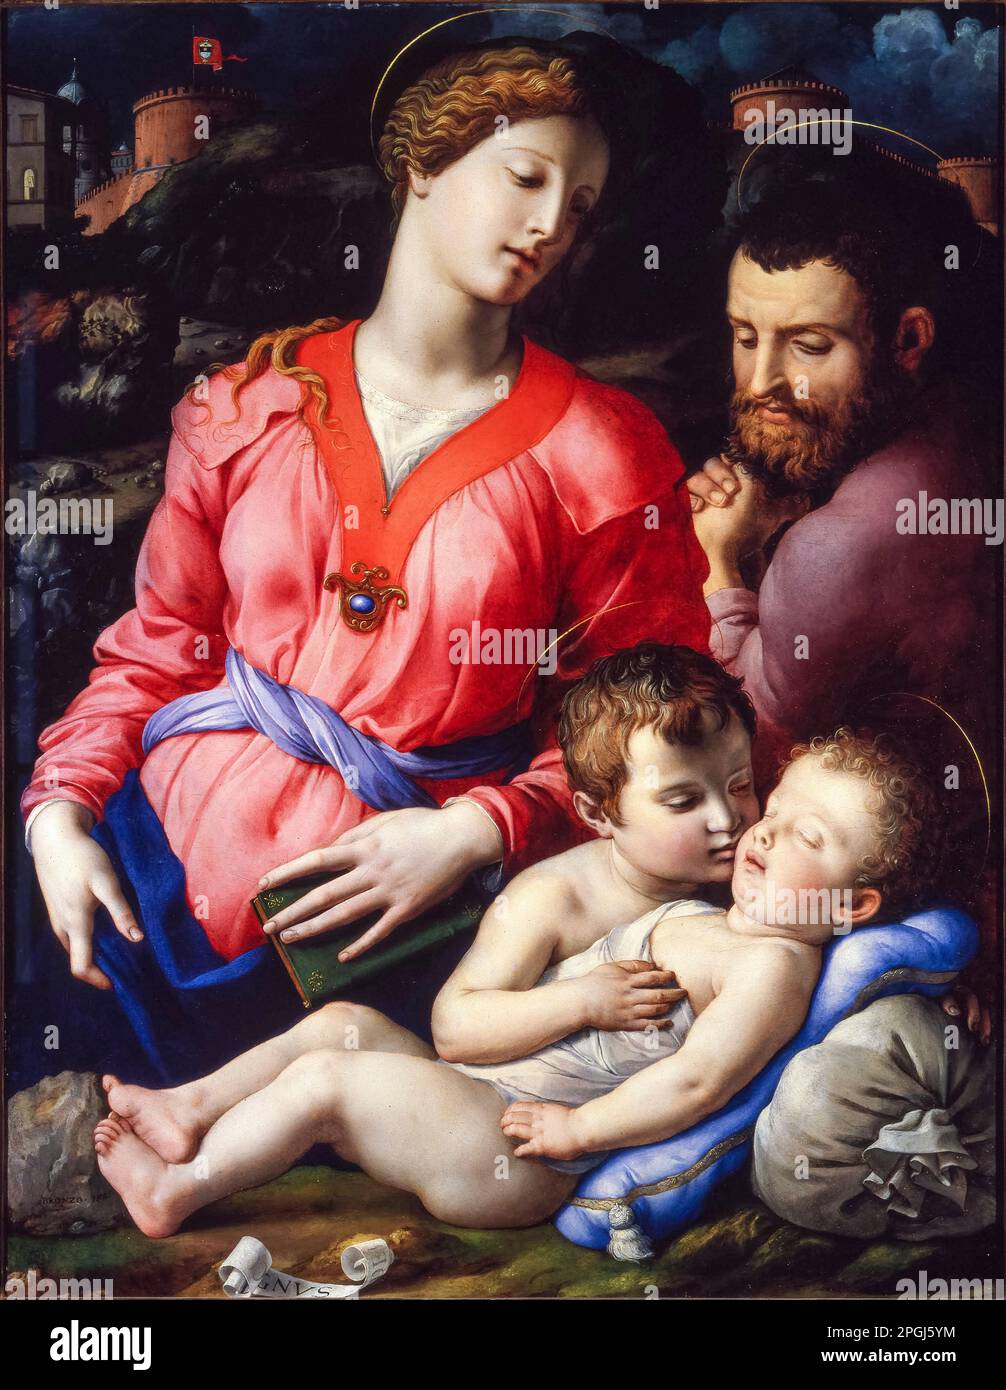 La Sacra Famiglia Panciatichi, dipinto ad olio su tavola di Agnolo Bronzino, circa 1540 Foto Stock